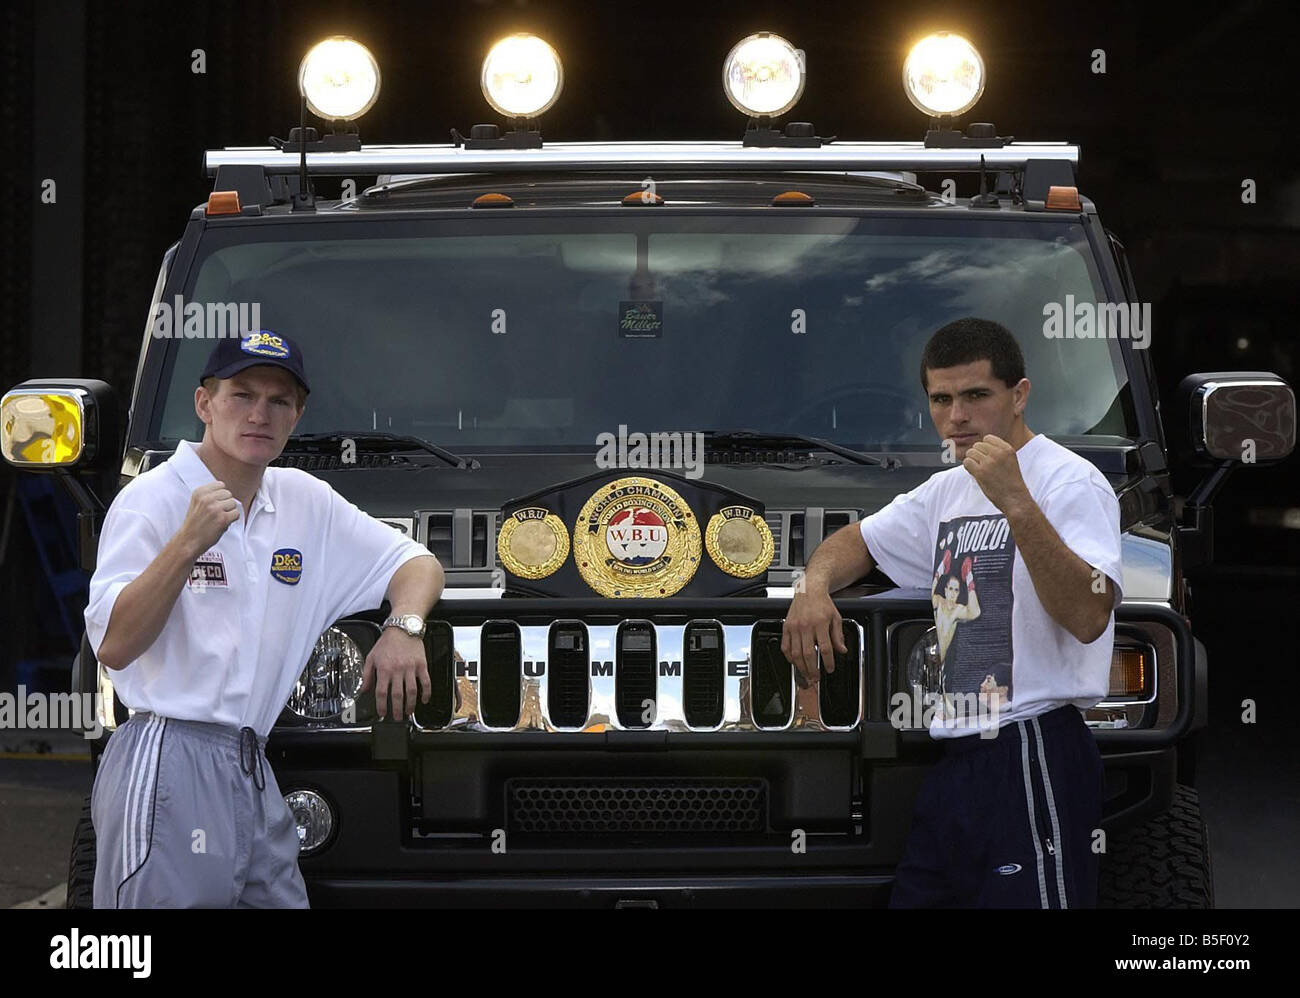 Ricky Hatton et Aldo Rios vu ici debout devant des Hummvee location Hummer pour promouvoir leur super-légers titre lutte Septembre 2003 Banque D'Images